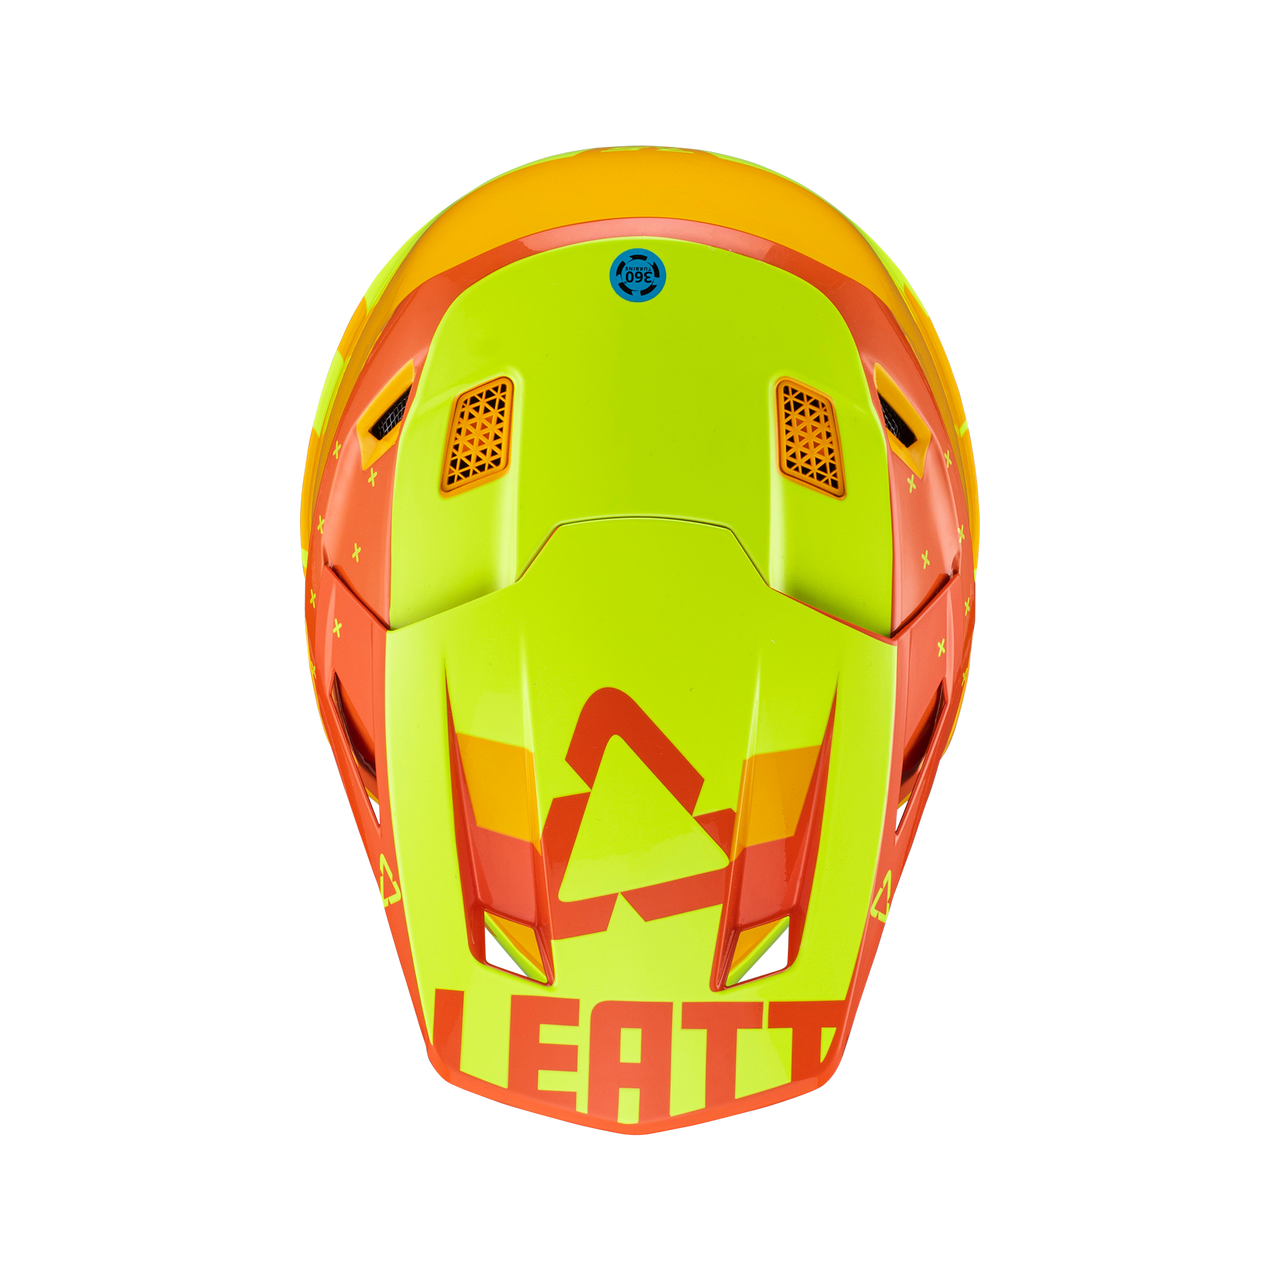 Leatt Moto 7.5 V23 Helmet Citrus